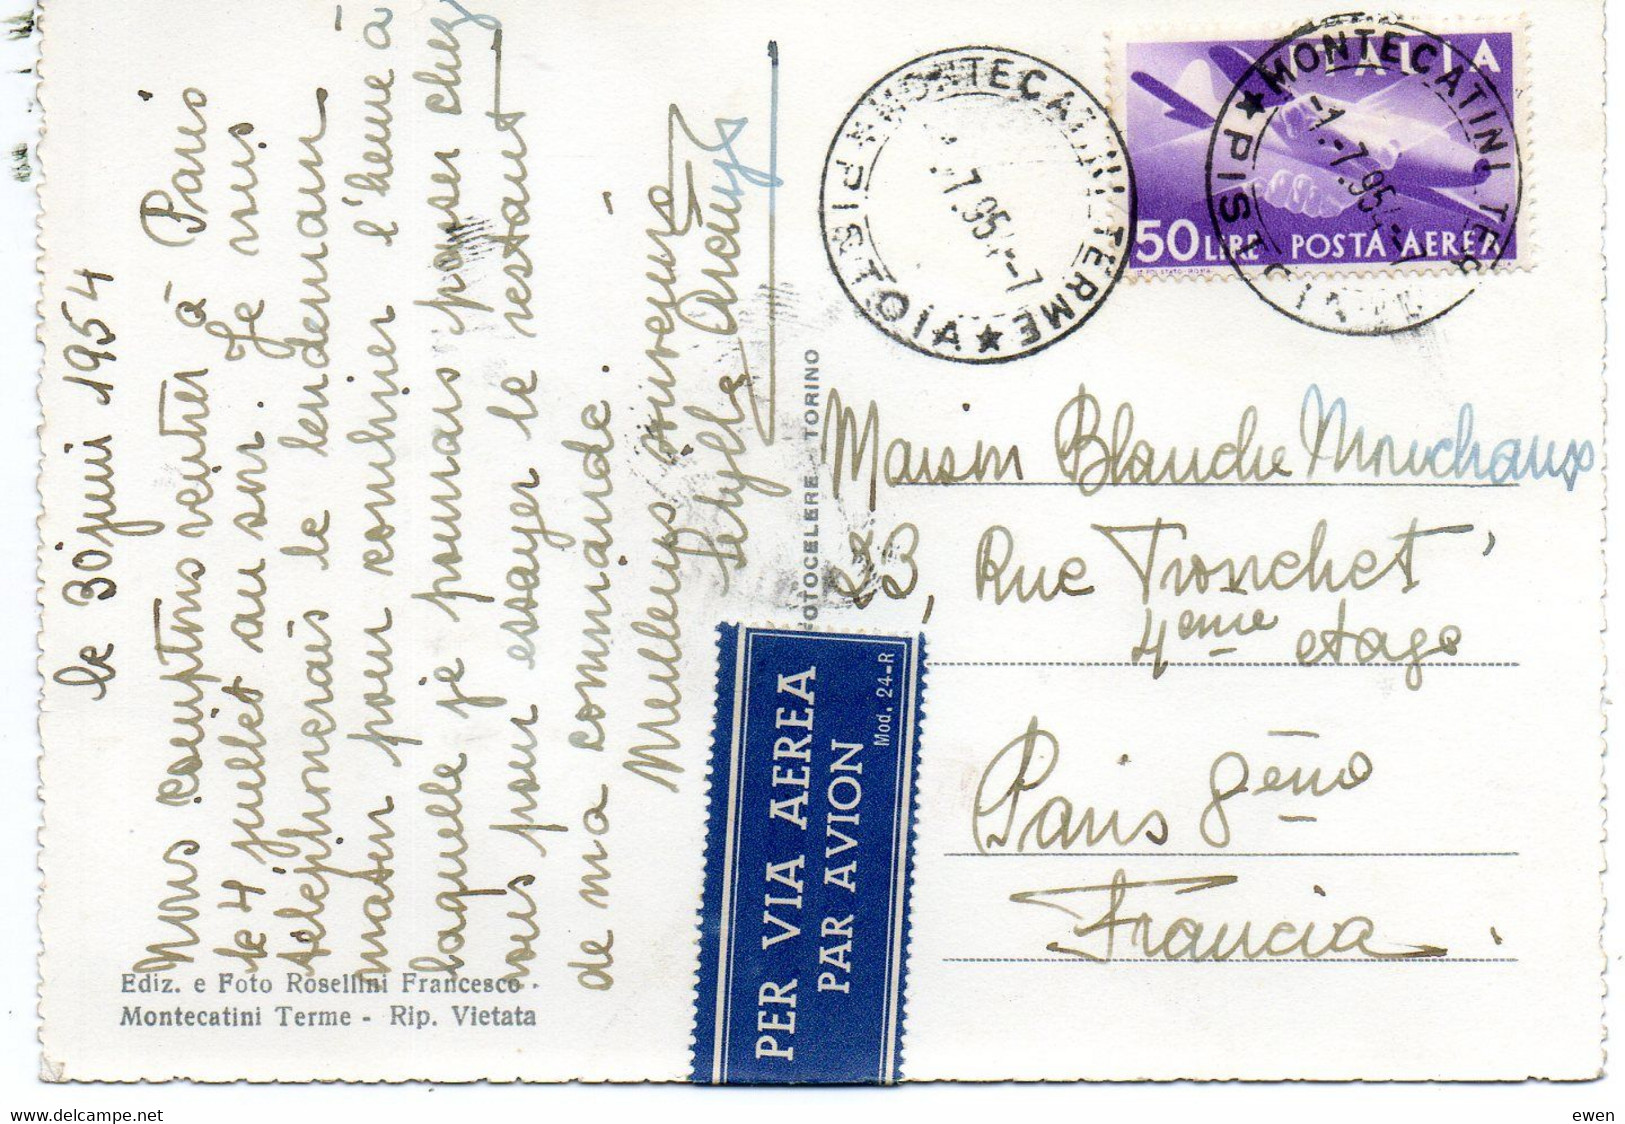 Italie. Timbre Poste Aérienne N° 121 Sur Carte Postale Vers La France. Via Aerea. - Airmail